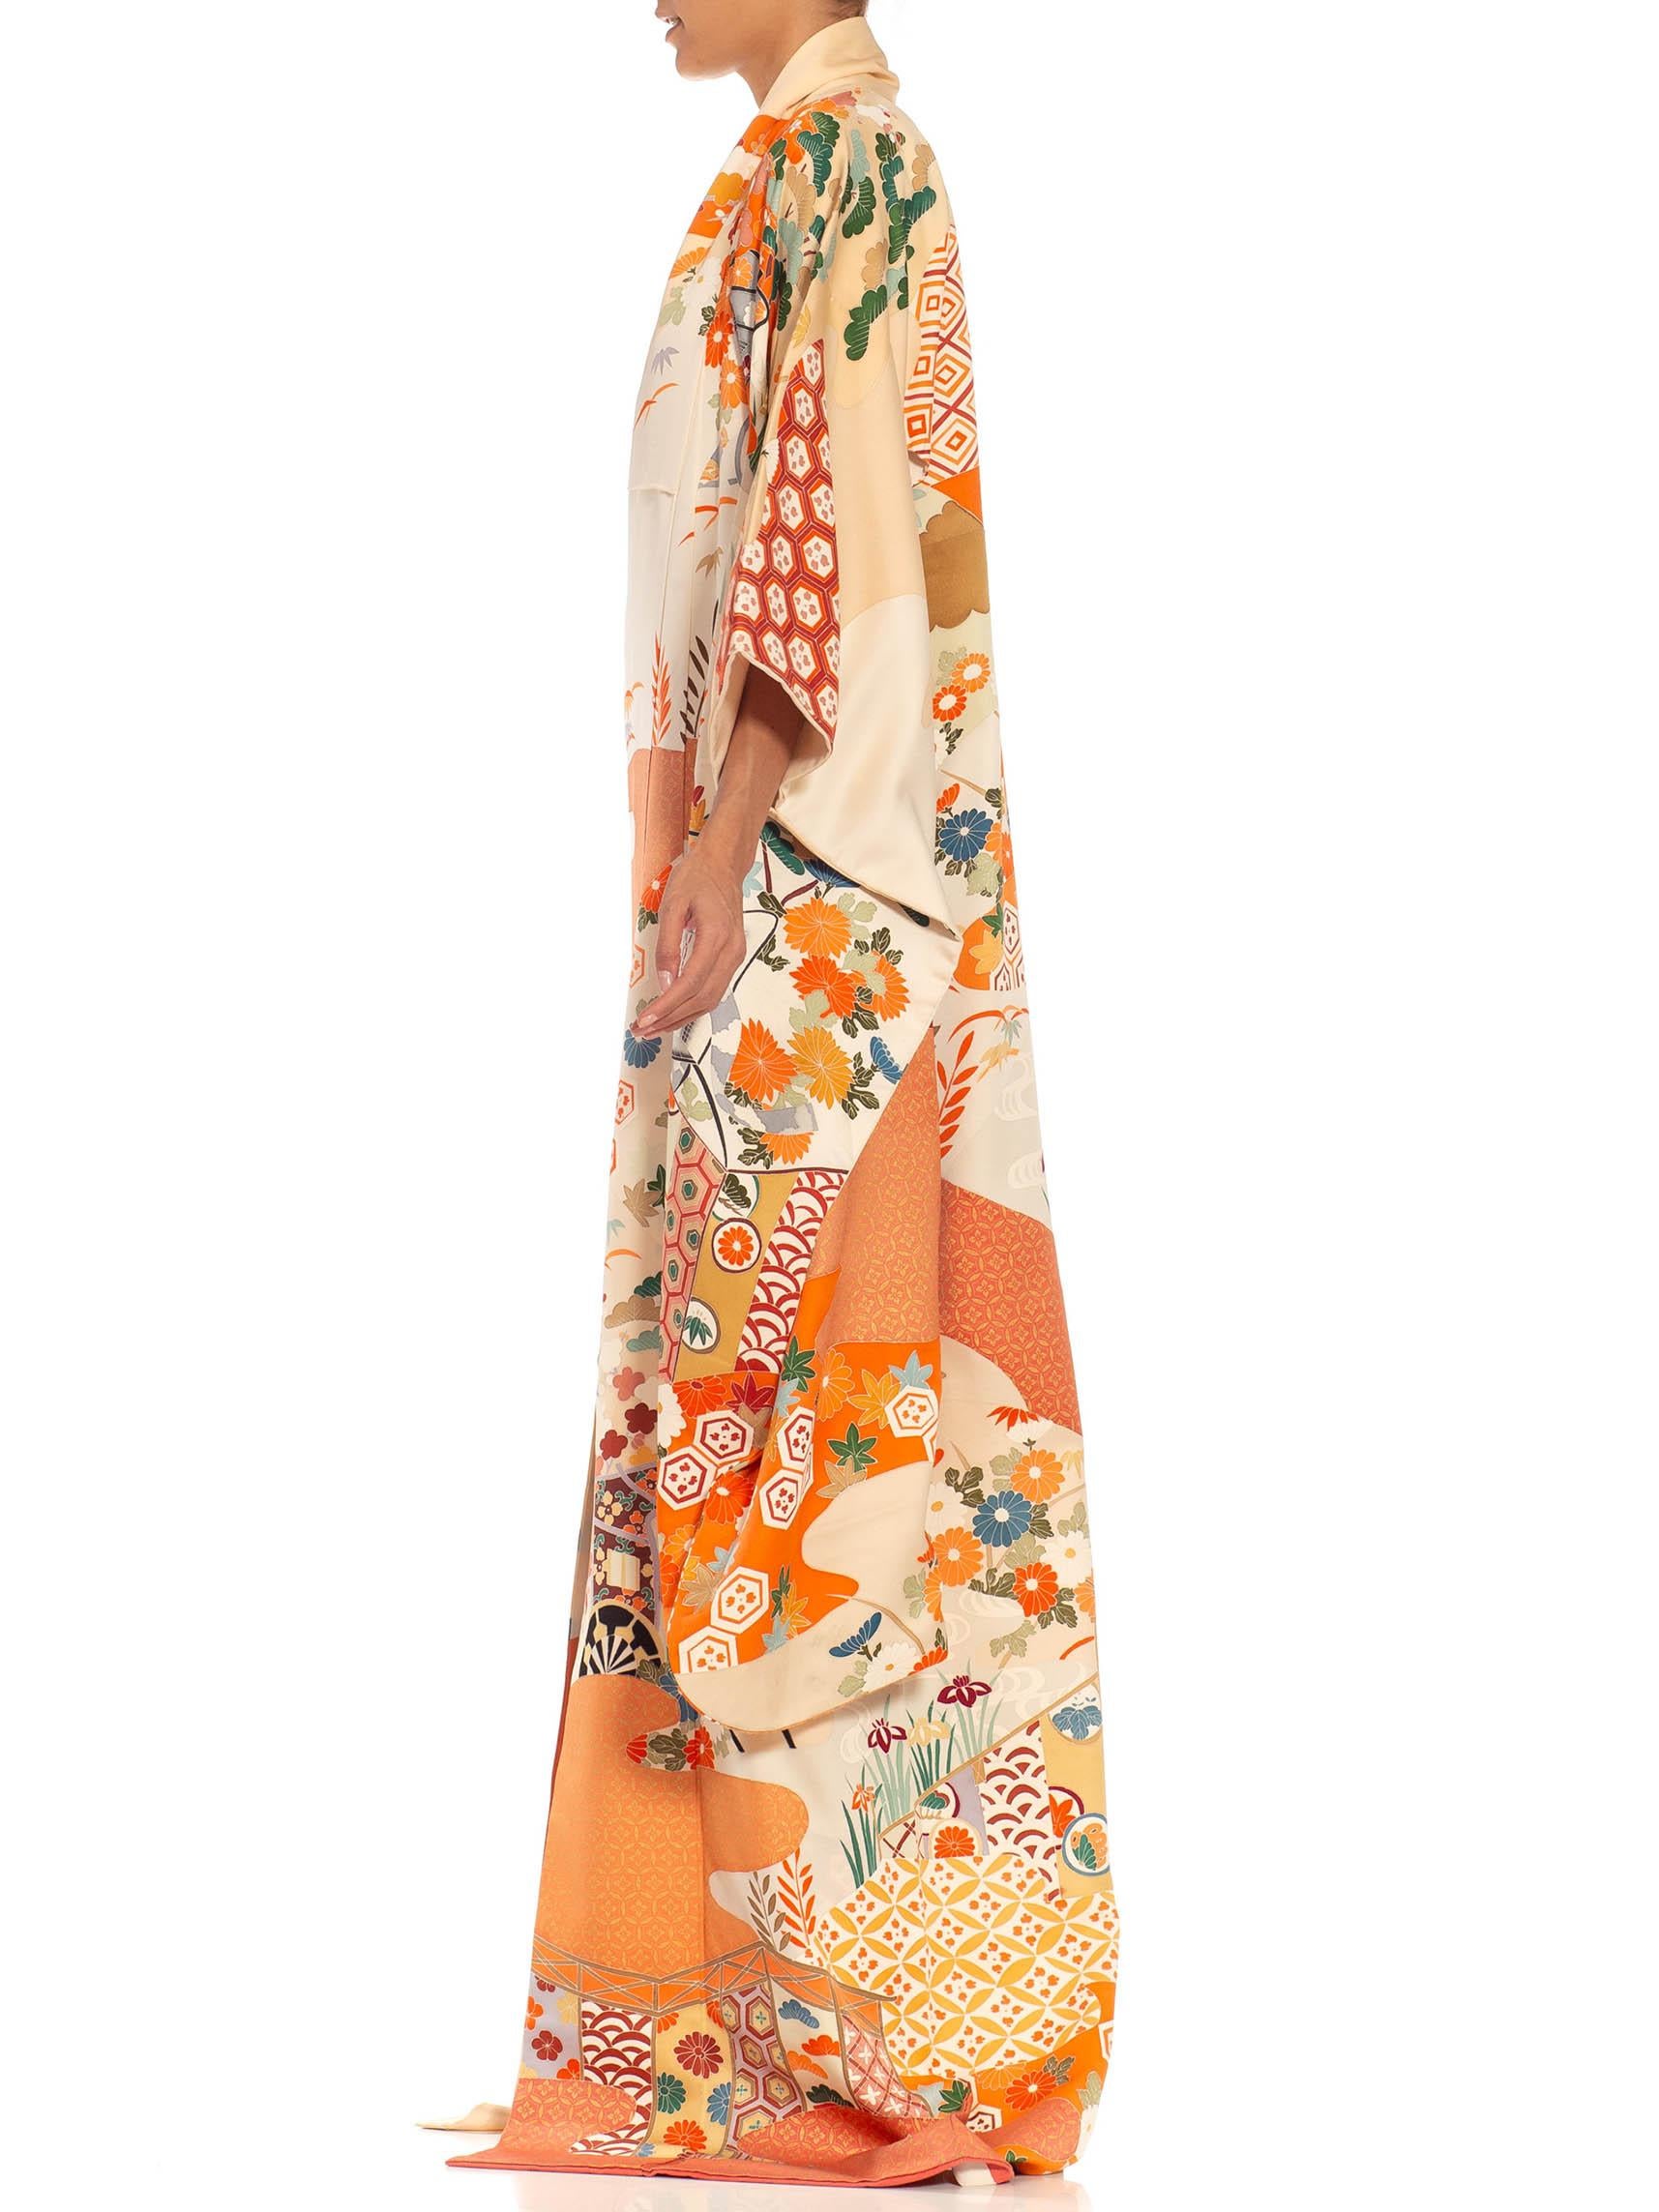 Orange & Cream Multicolored Hand Painted Silk Kimono For Sale 1